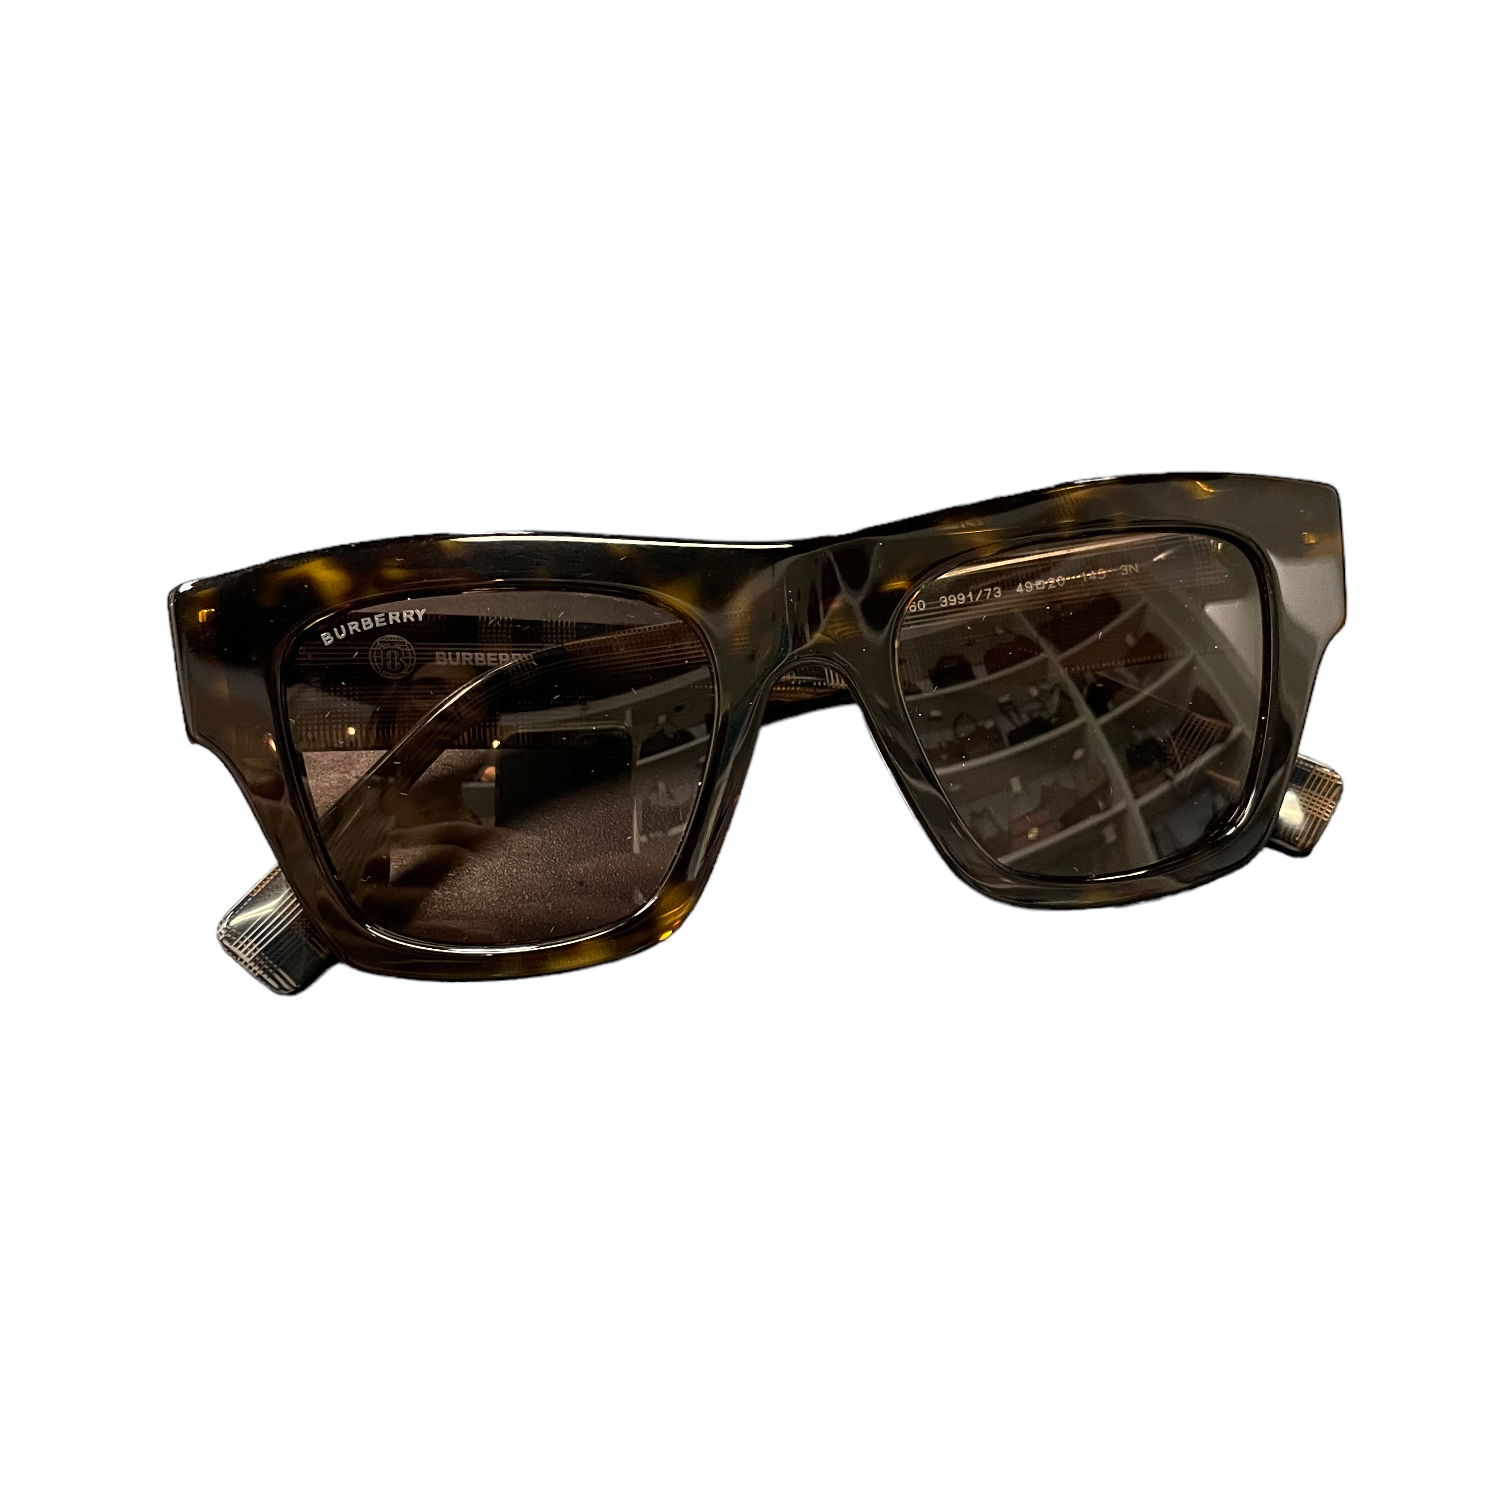 Burberry Nova Check Sunglasses